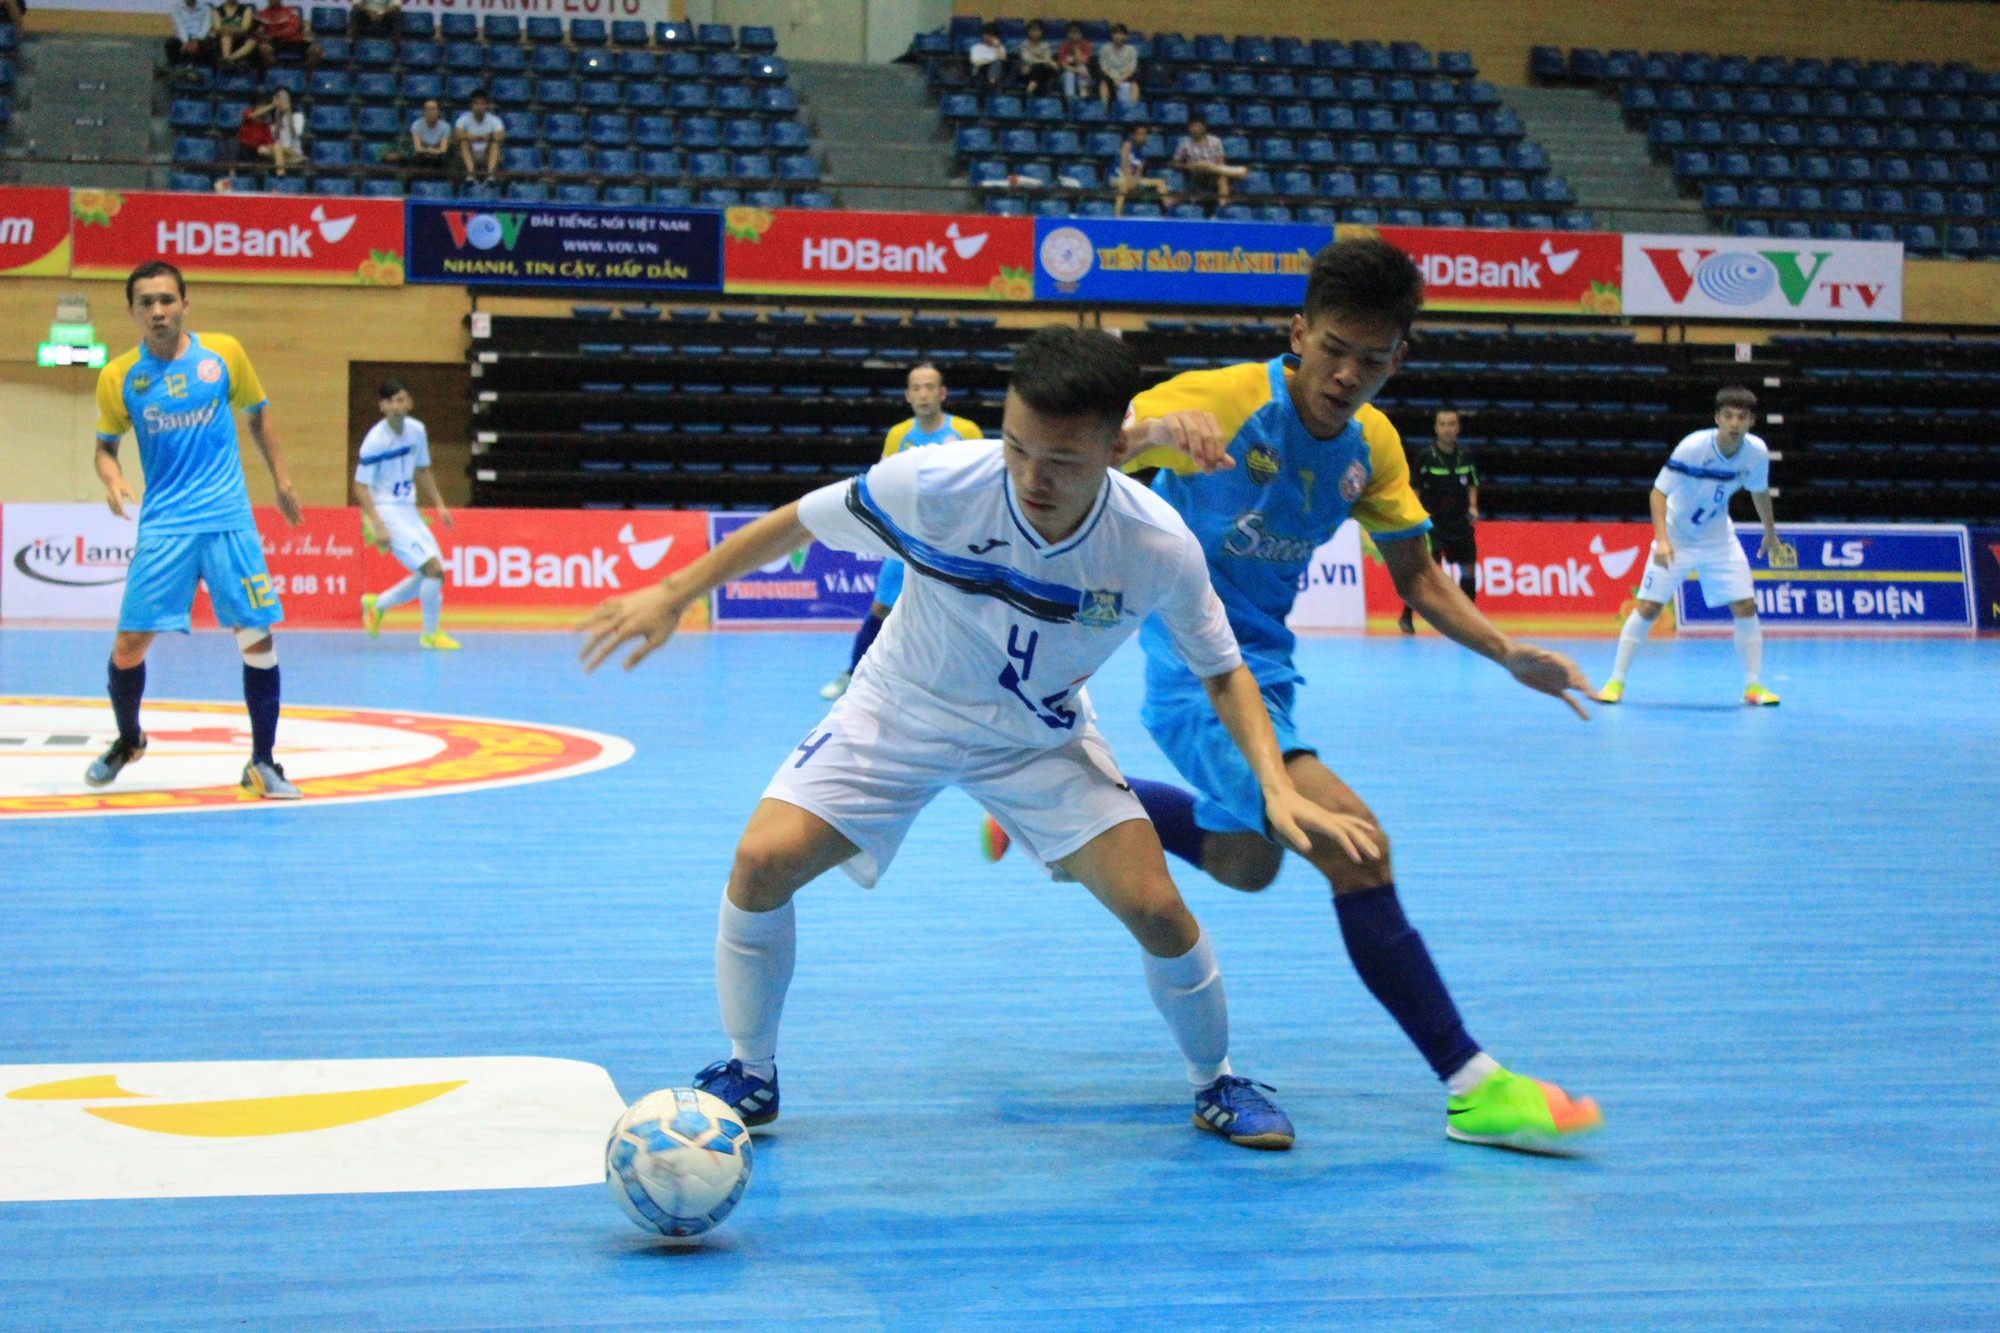 Nhà vô địch lượt đi Futsal VĐQG 2018: Nội lực của chú “nai vàng” - Ảnh 3.